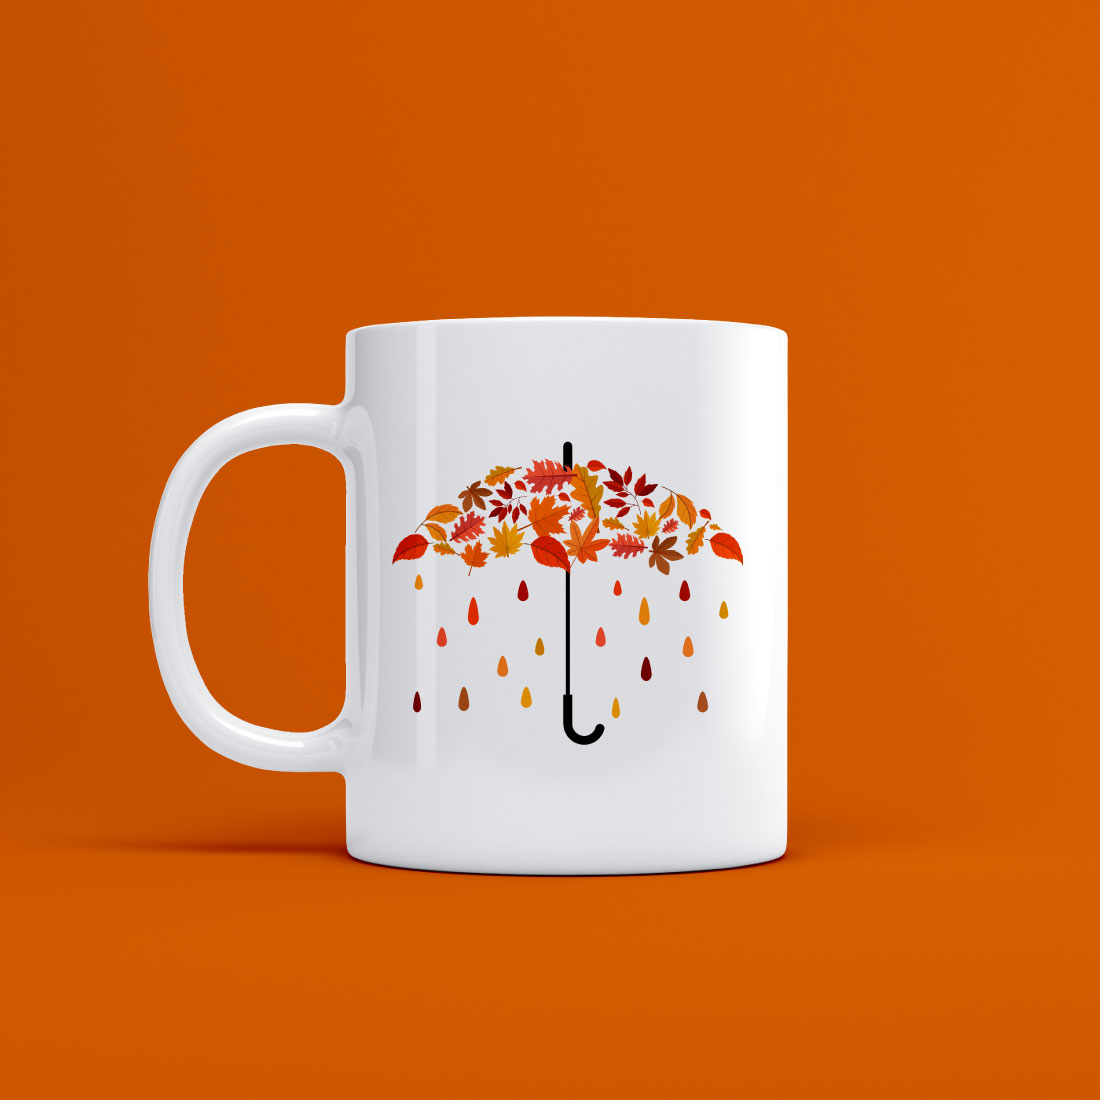 autumn leaves umbrella with faling colorful drops mug design 625